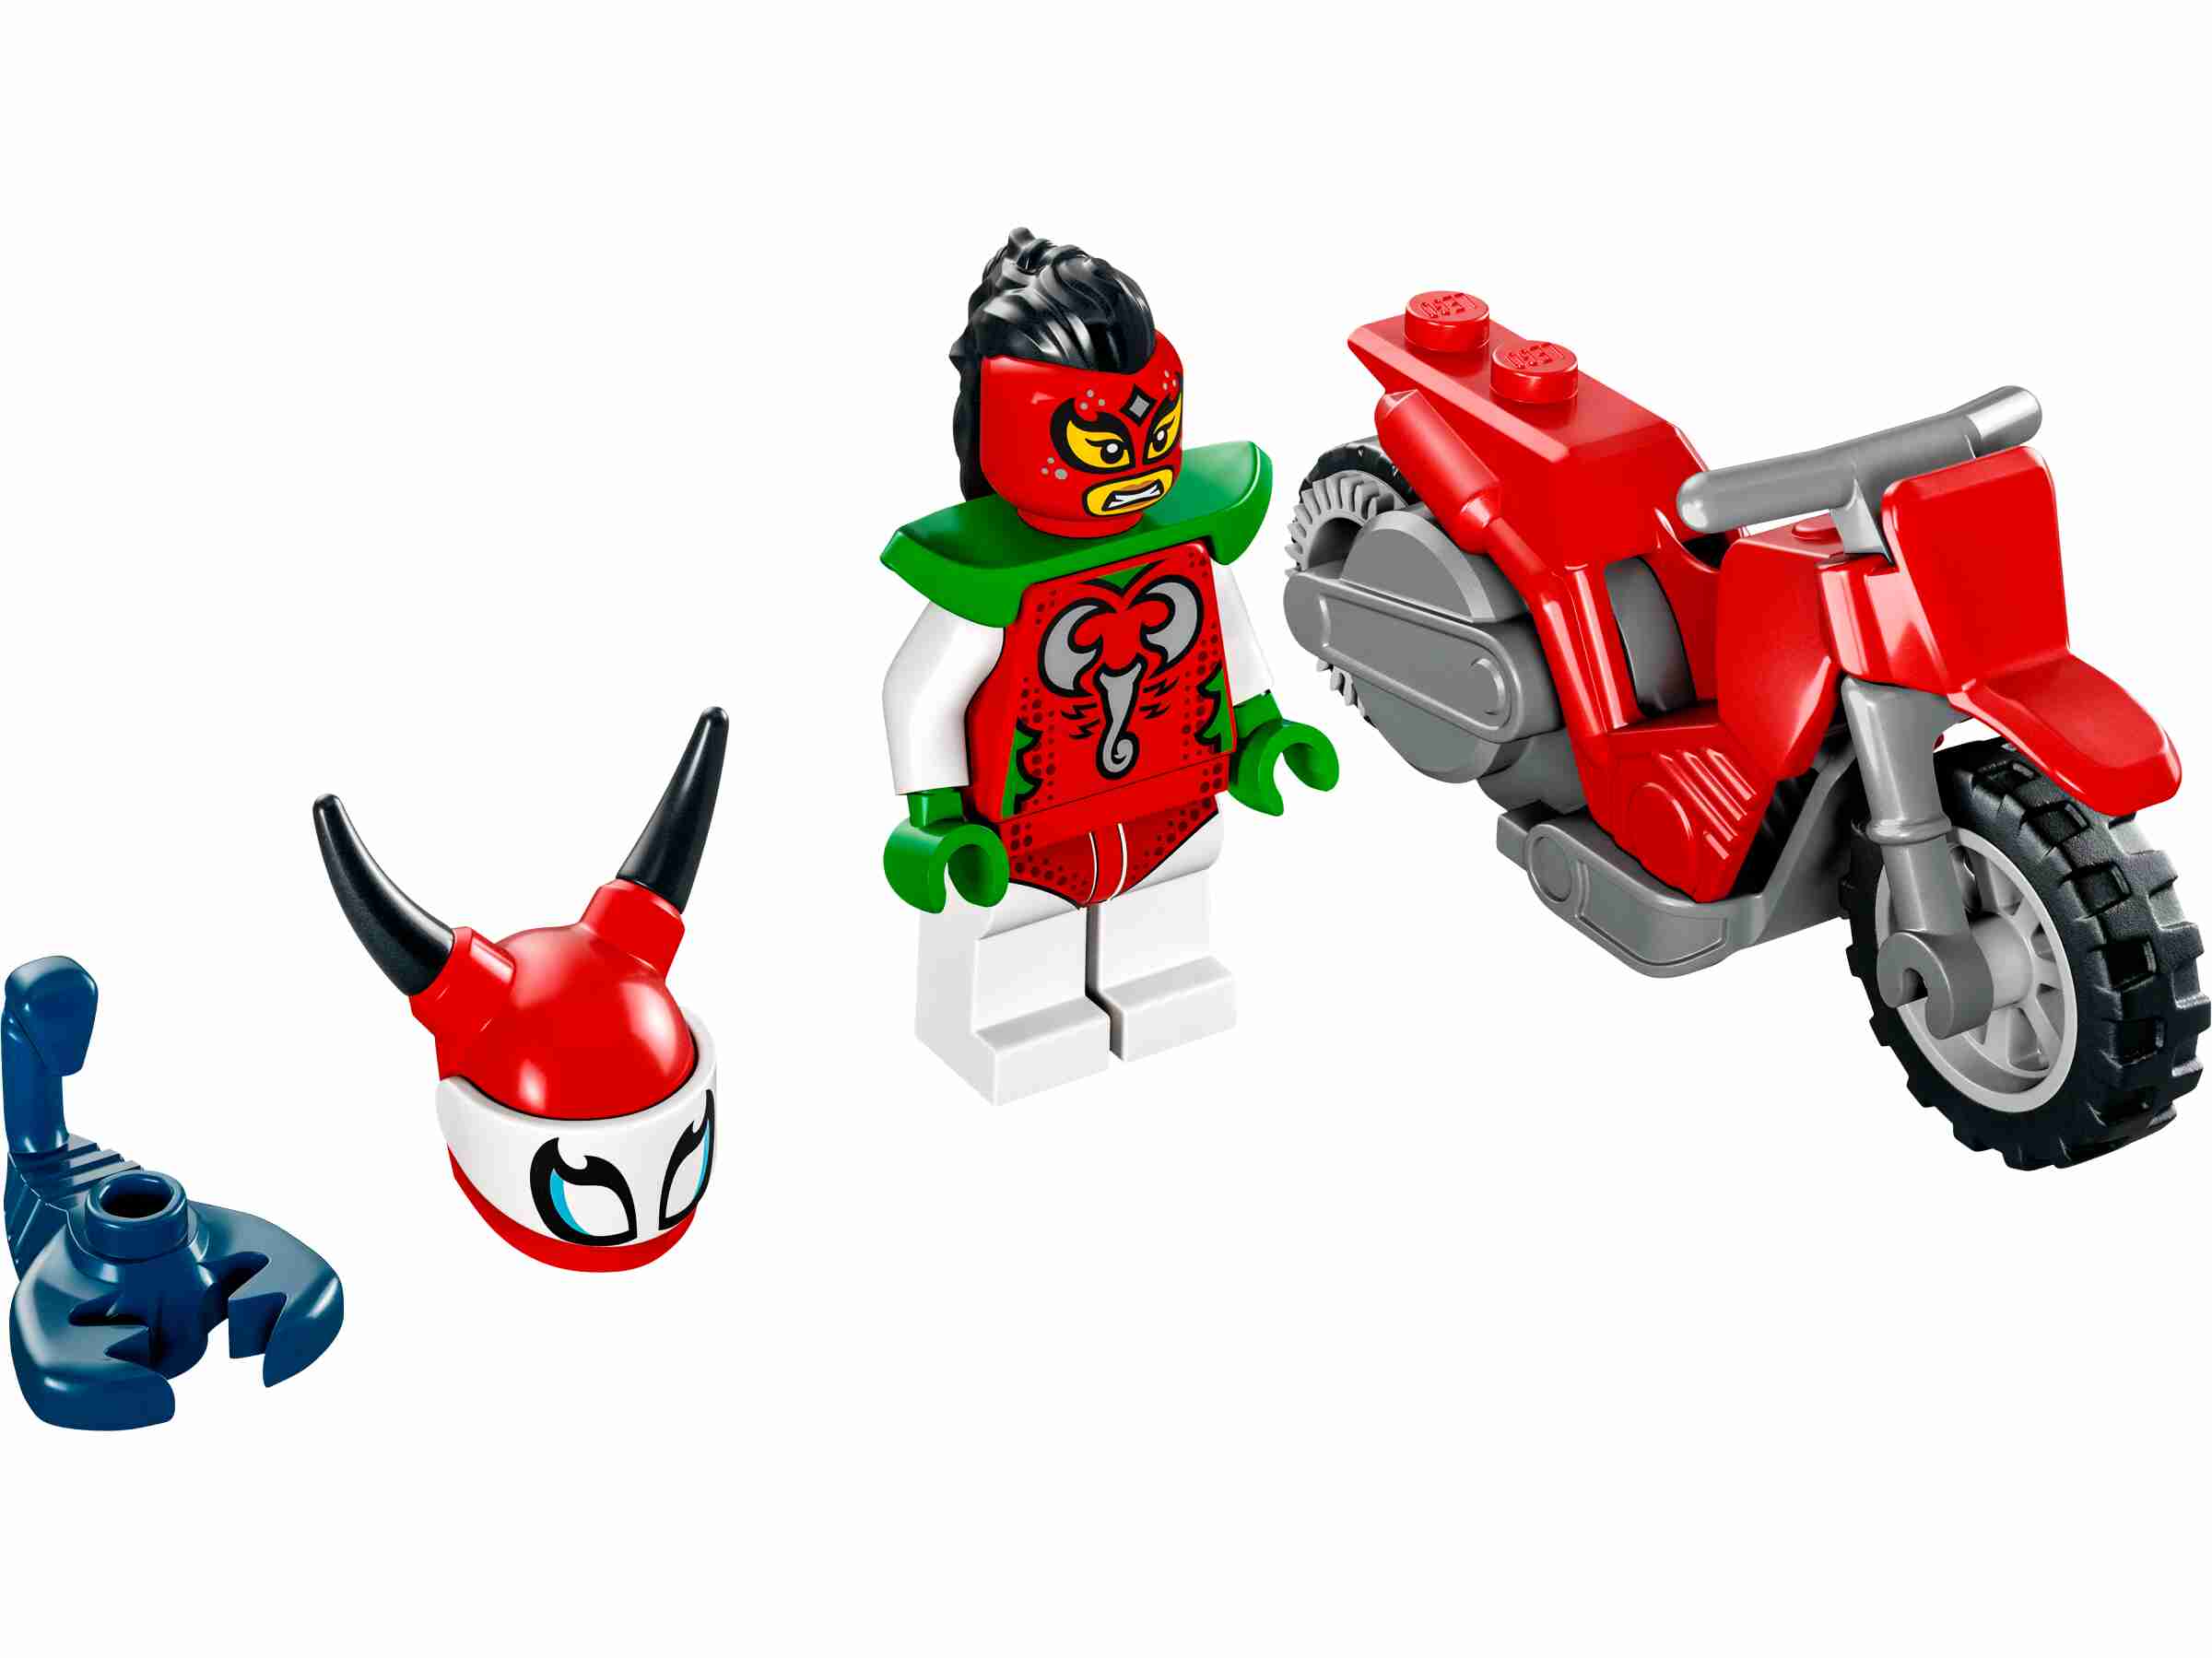 LEGO 60332 City Stuntz Skorpion-Stuntbike, Set mit Motorrad und Minifigur